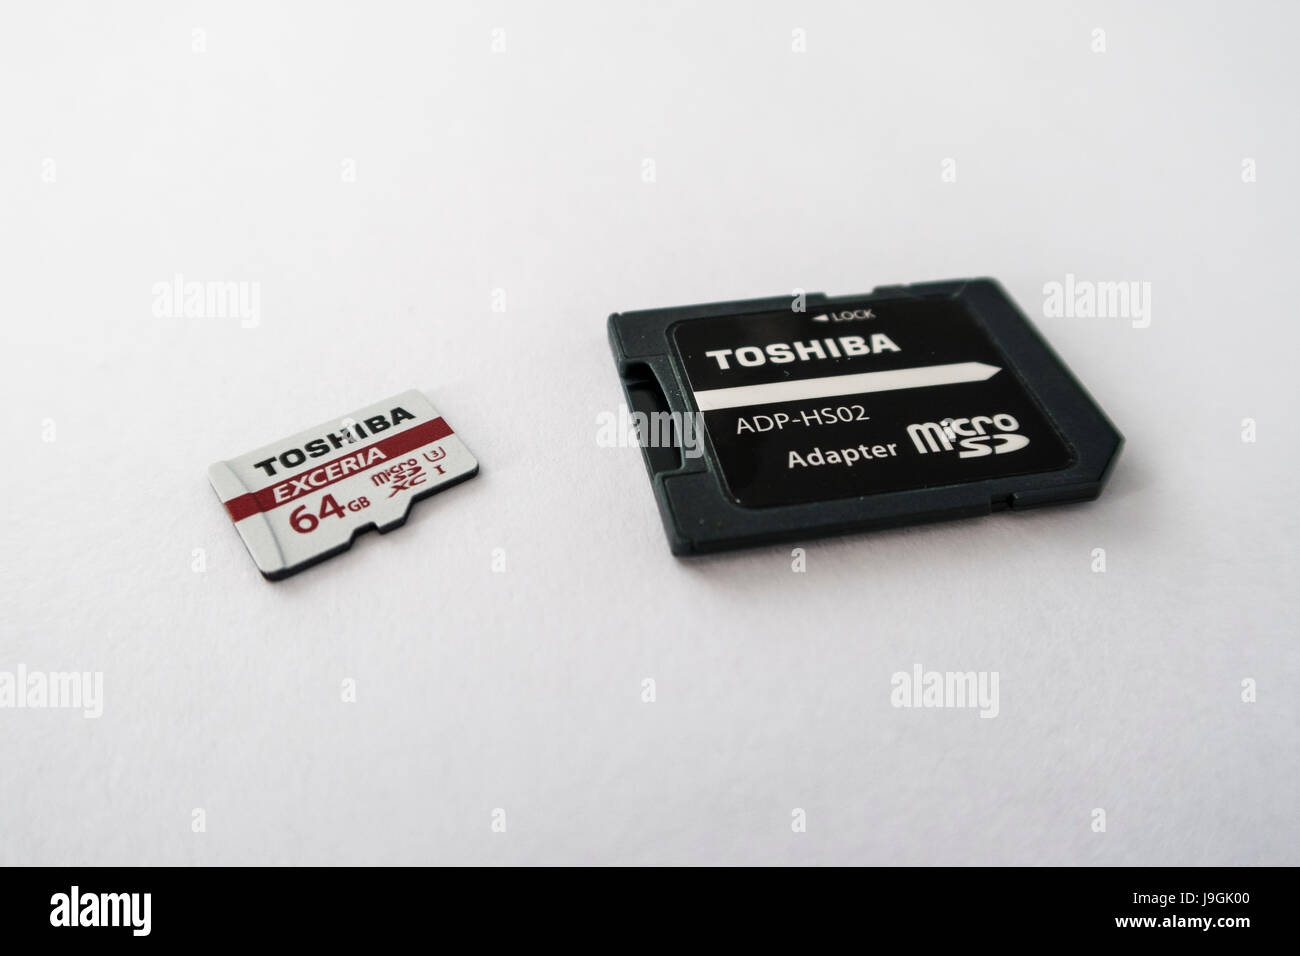 Toshiba Exceria XC microSD scheda di memoria con una capacità di 64GB e una scheda microSD per adattatore per scheda SD su sfondo bianco. Foto Stock